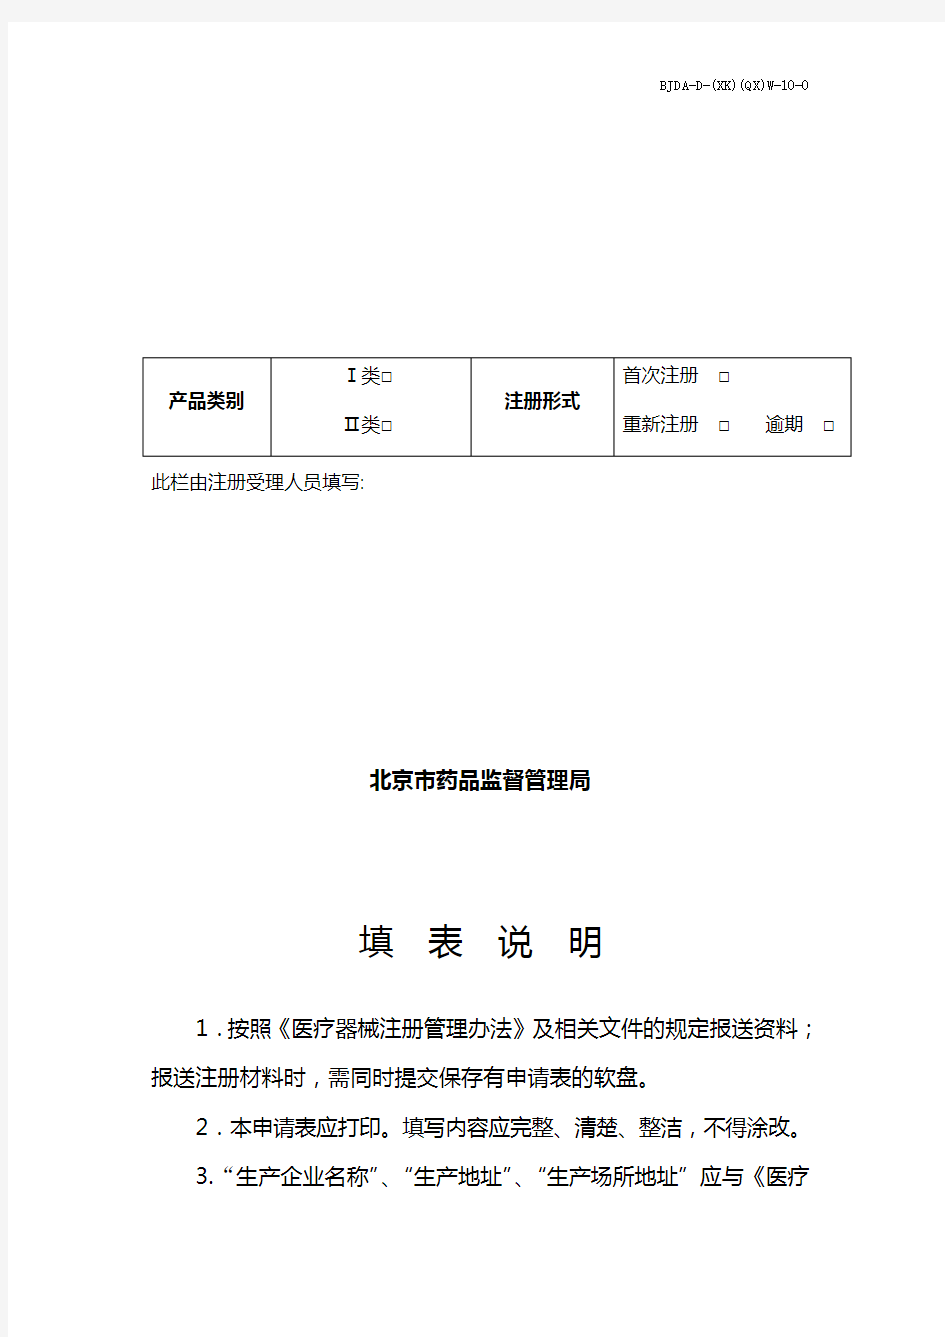 中华人民共和国医疗器械注册申请表